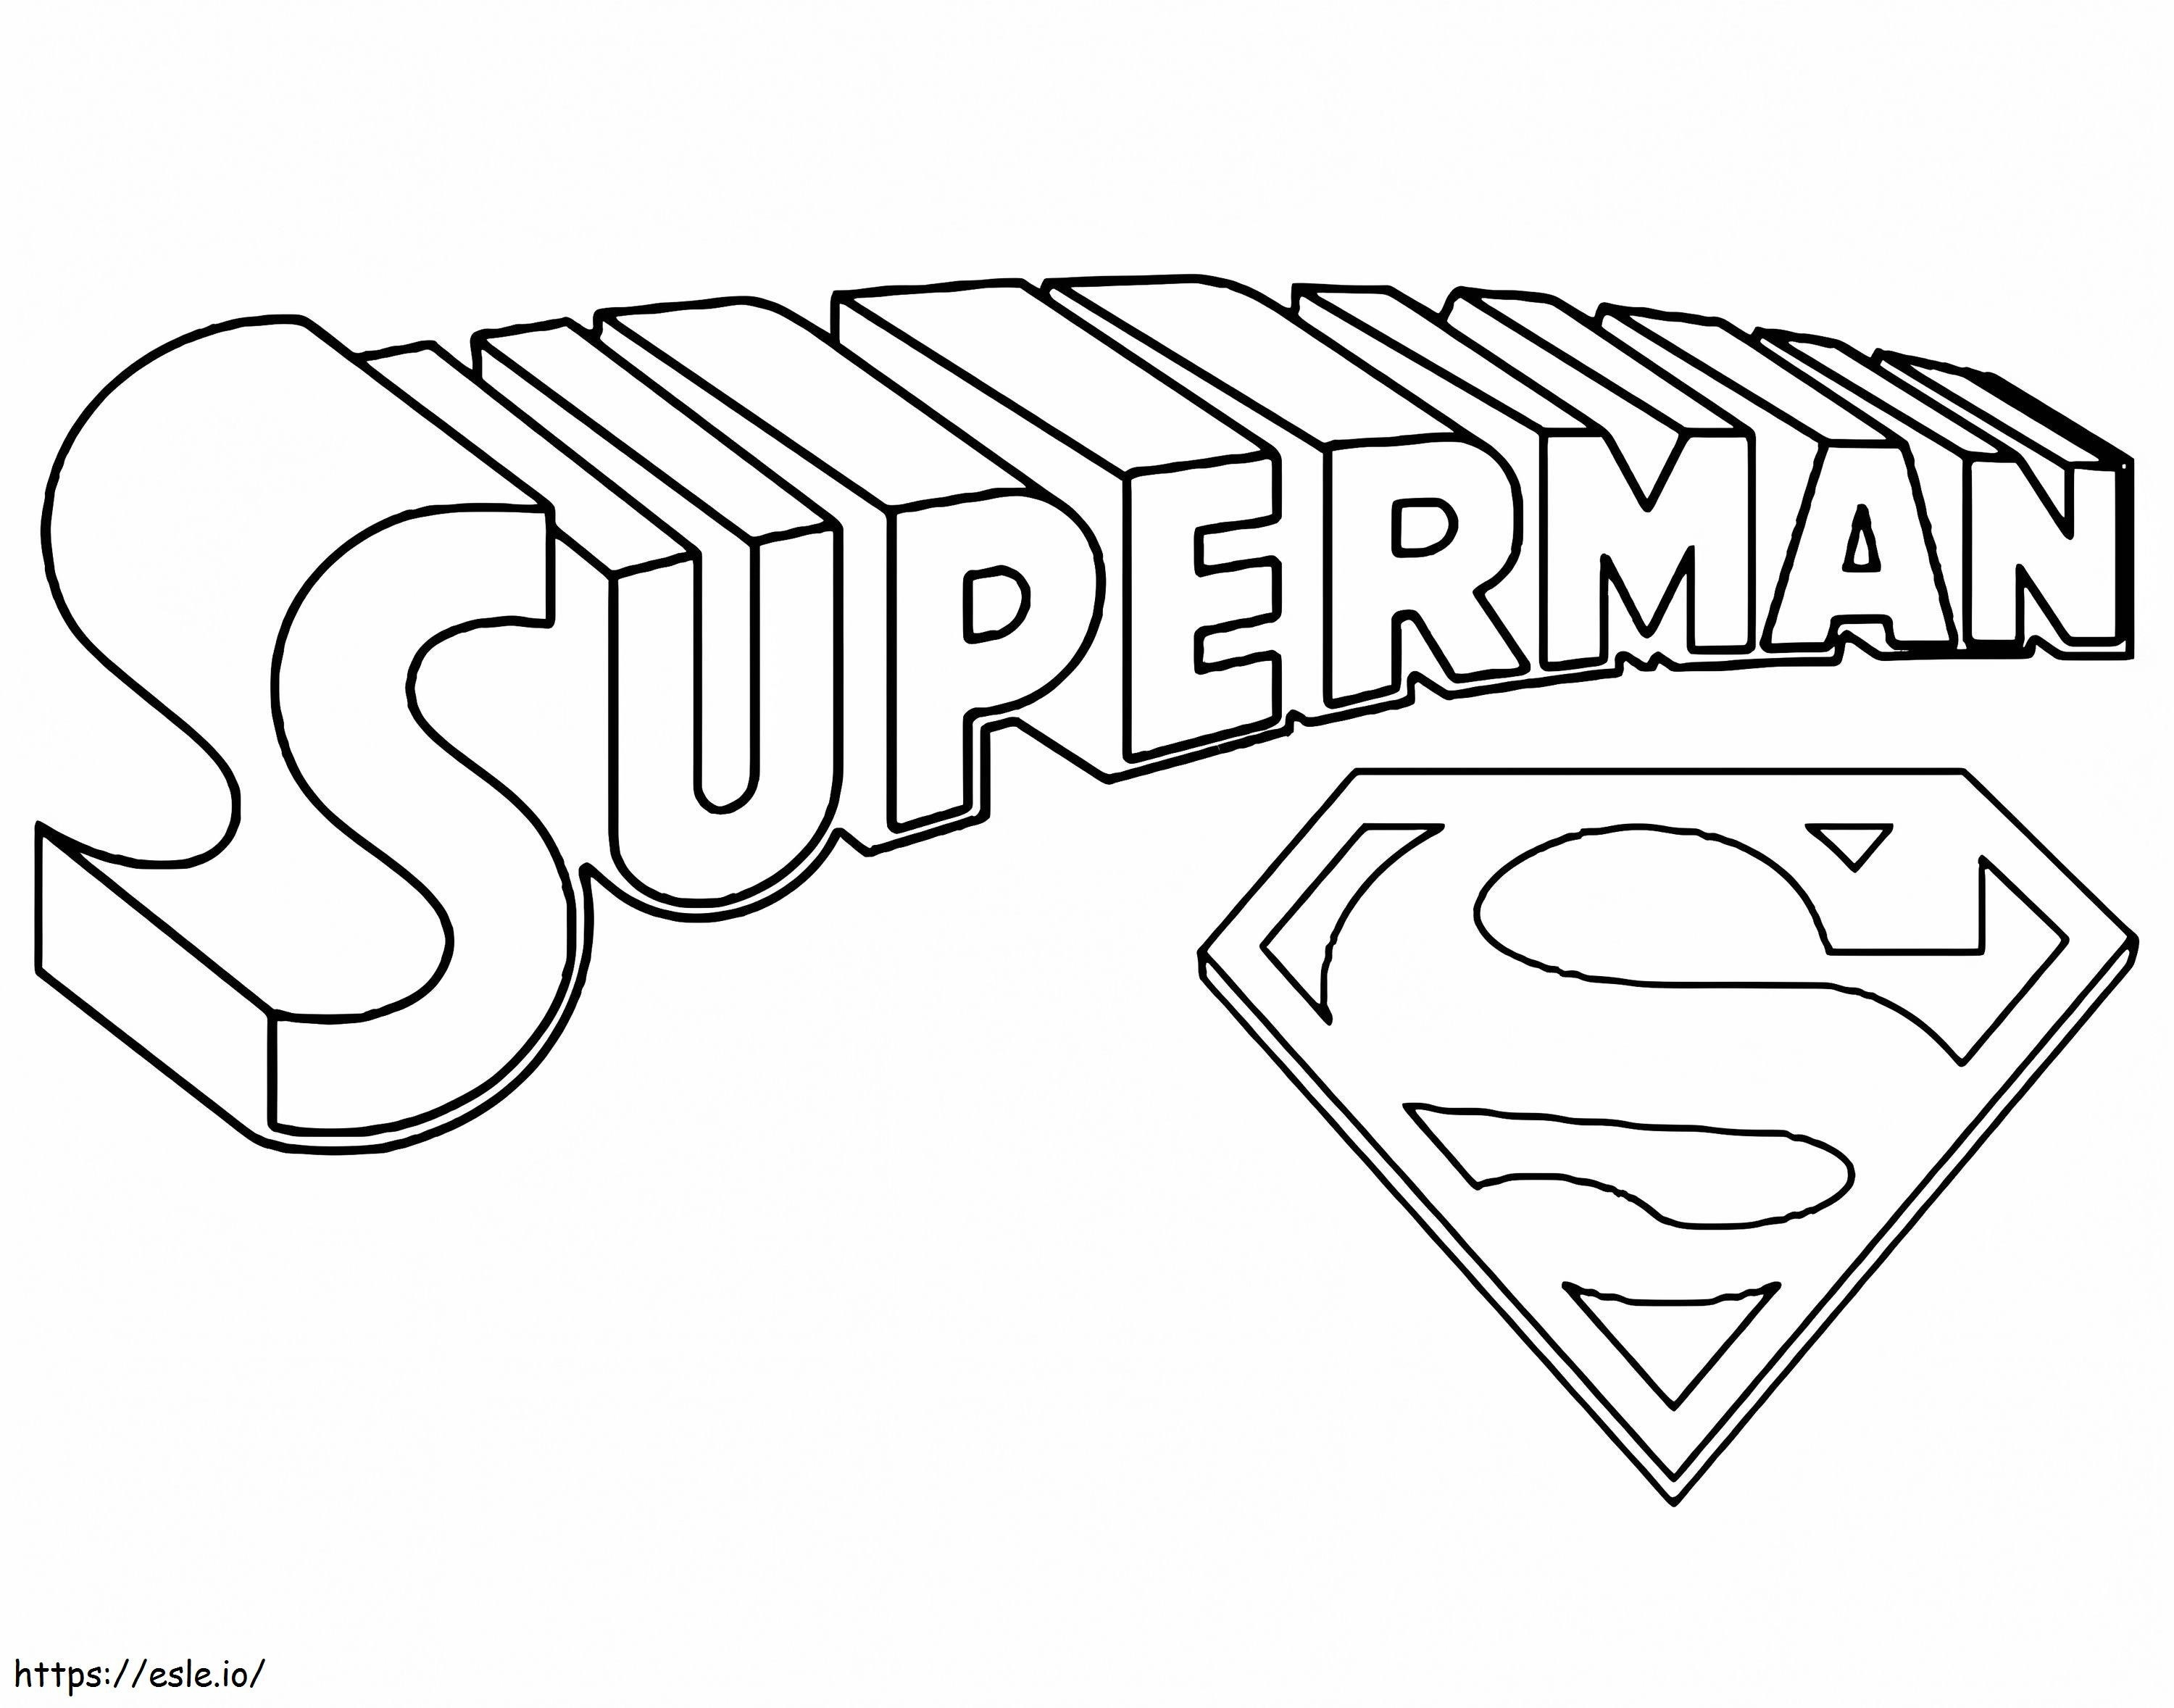 Título y símbolo de Superman para colorear